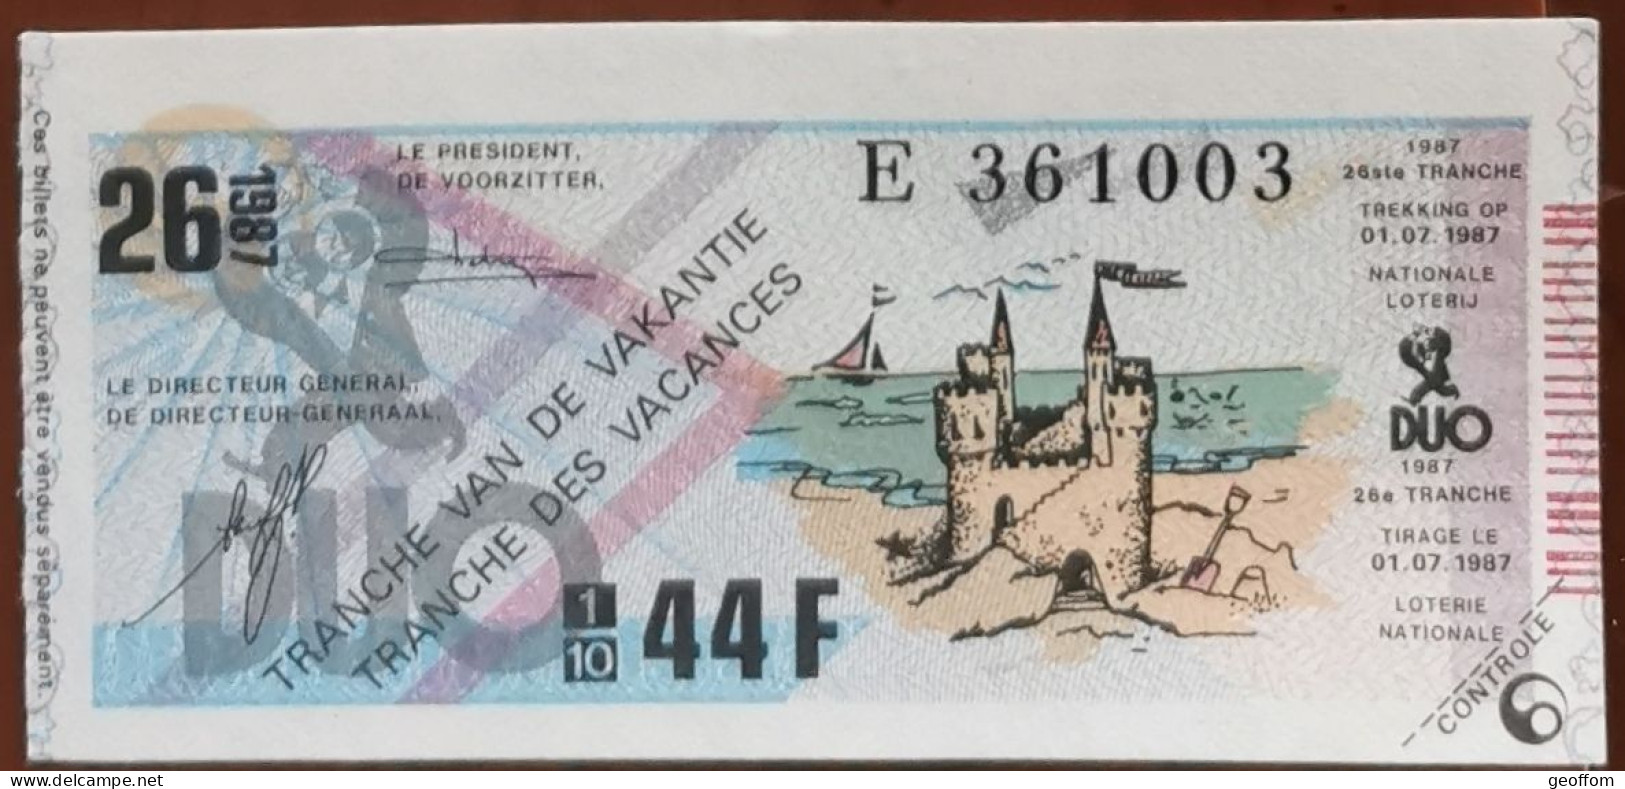 Billet De Loterie Nationale Belgique 1987 26e Tranche Des Vacances - 1-7-1987 - Billetes De Lotería